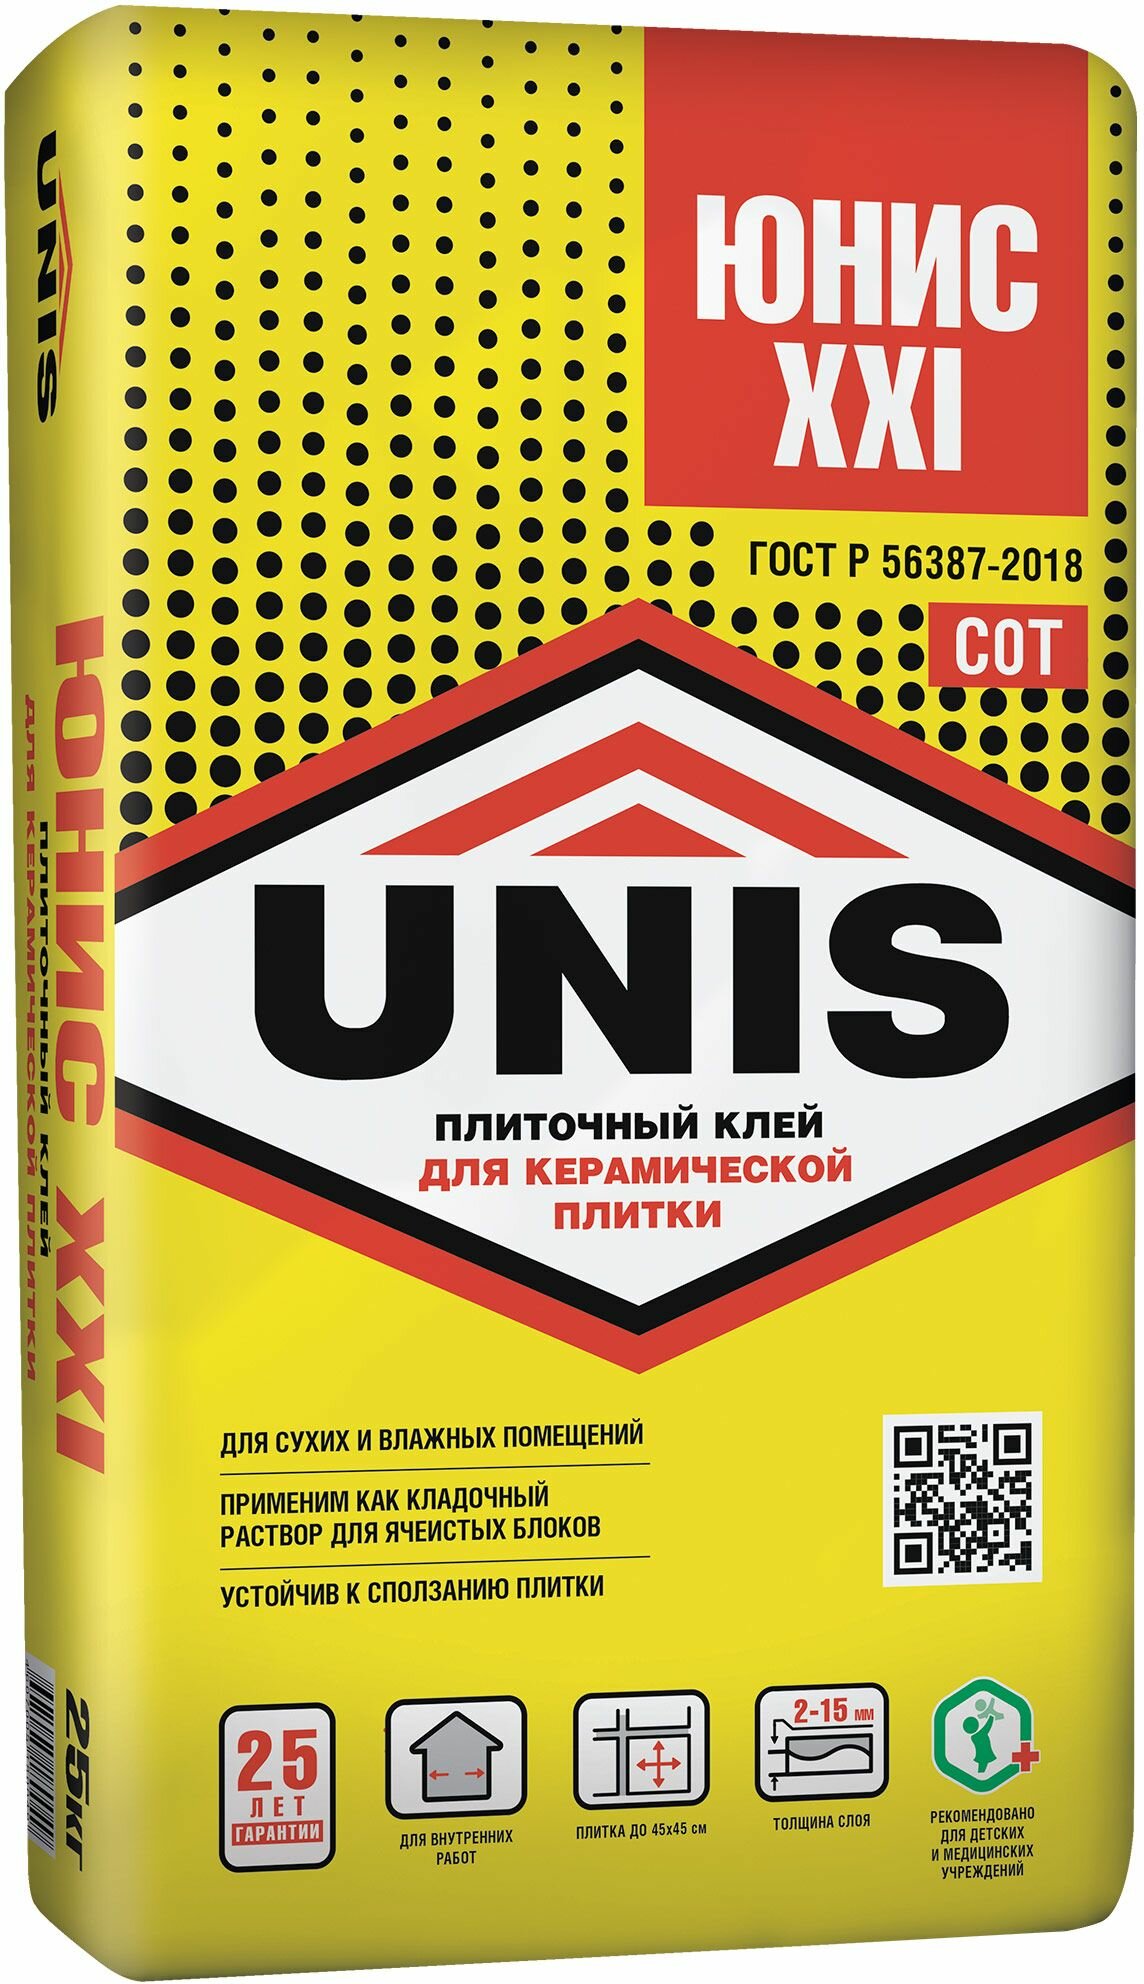 Плиточный клей UNIS Юнис-XXI класс С0T 25 кг 4289 4607005180049